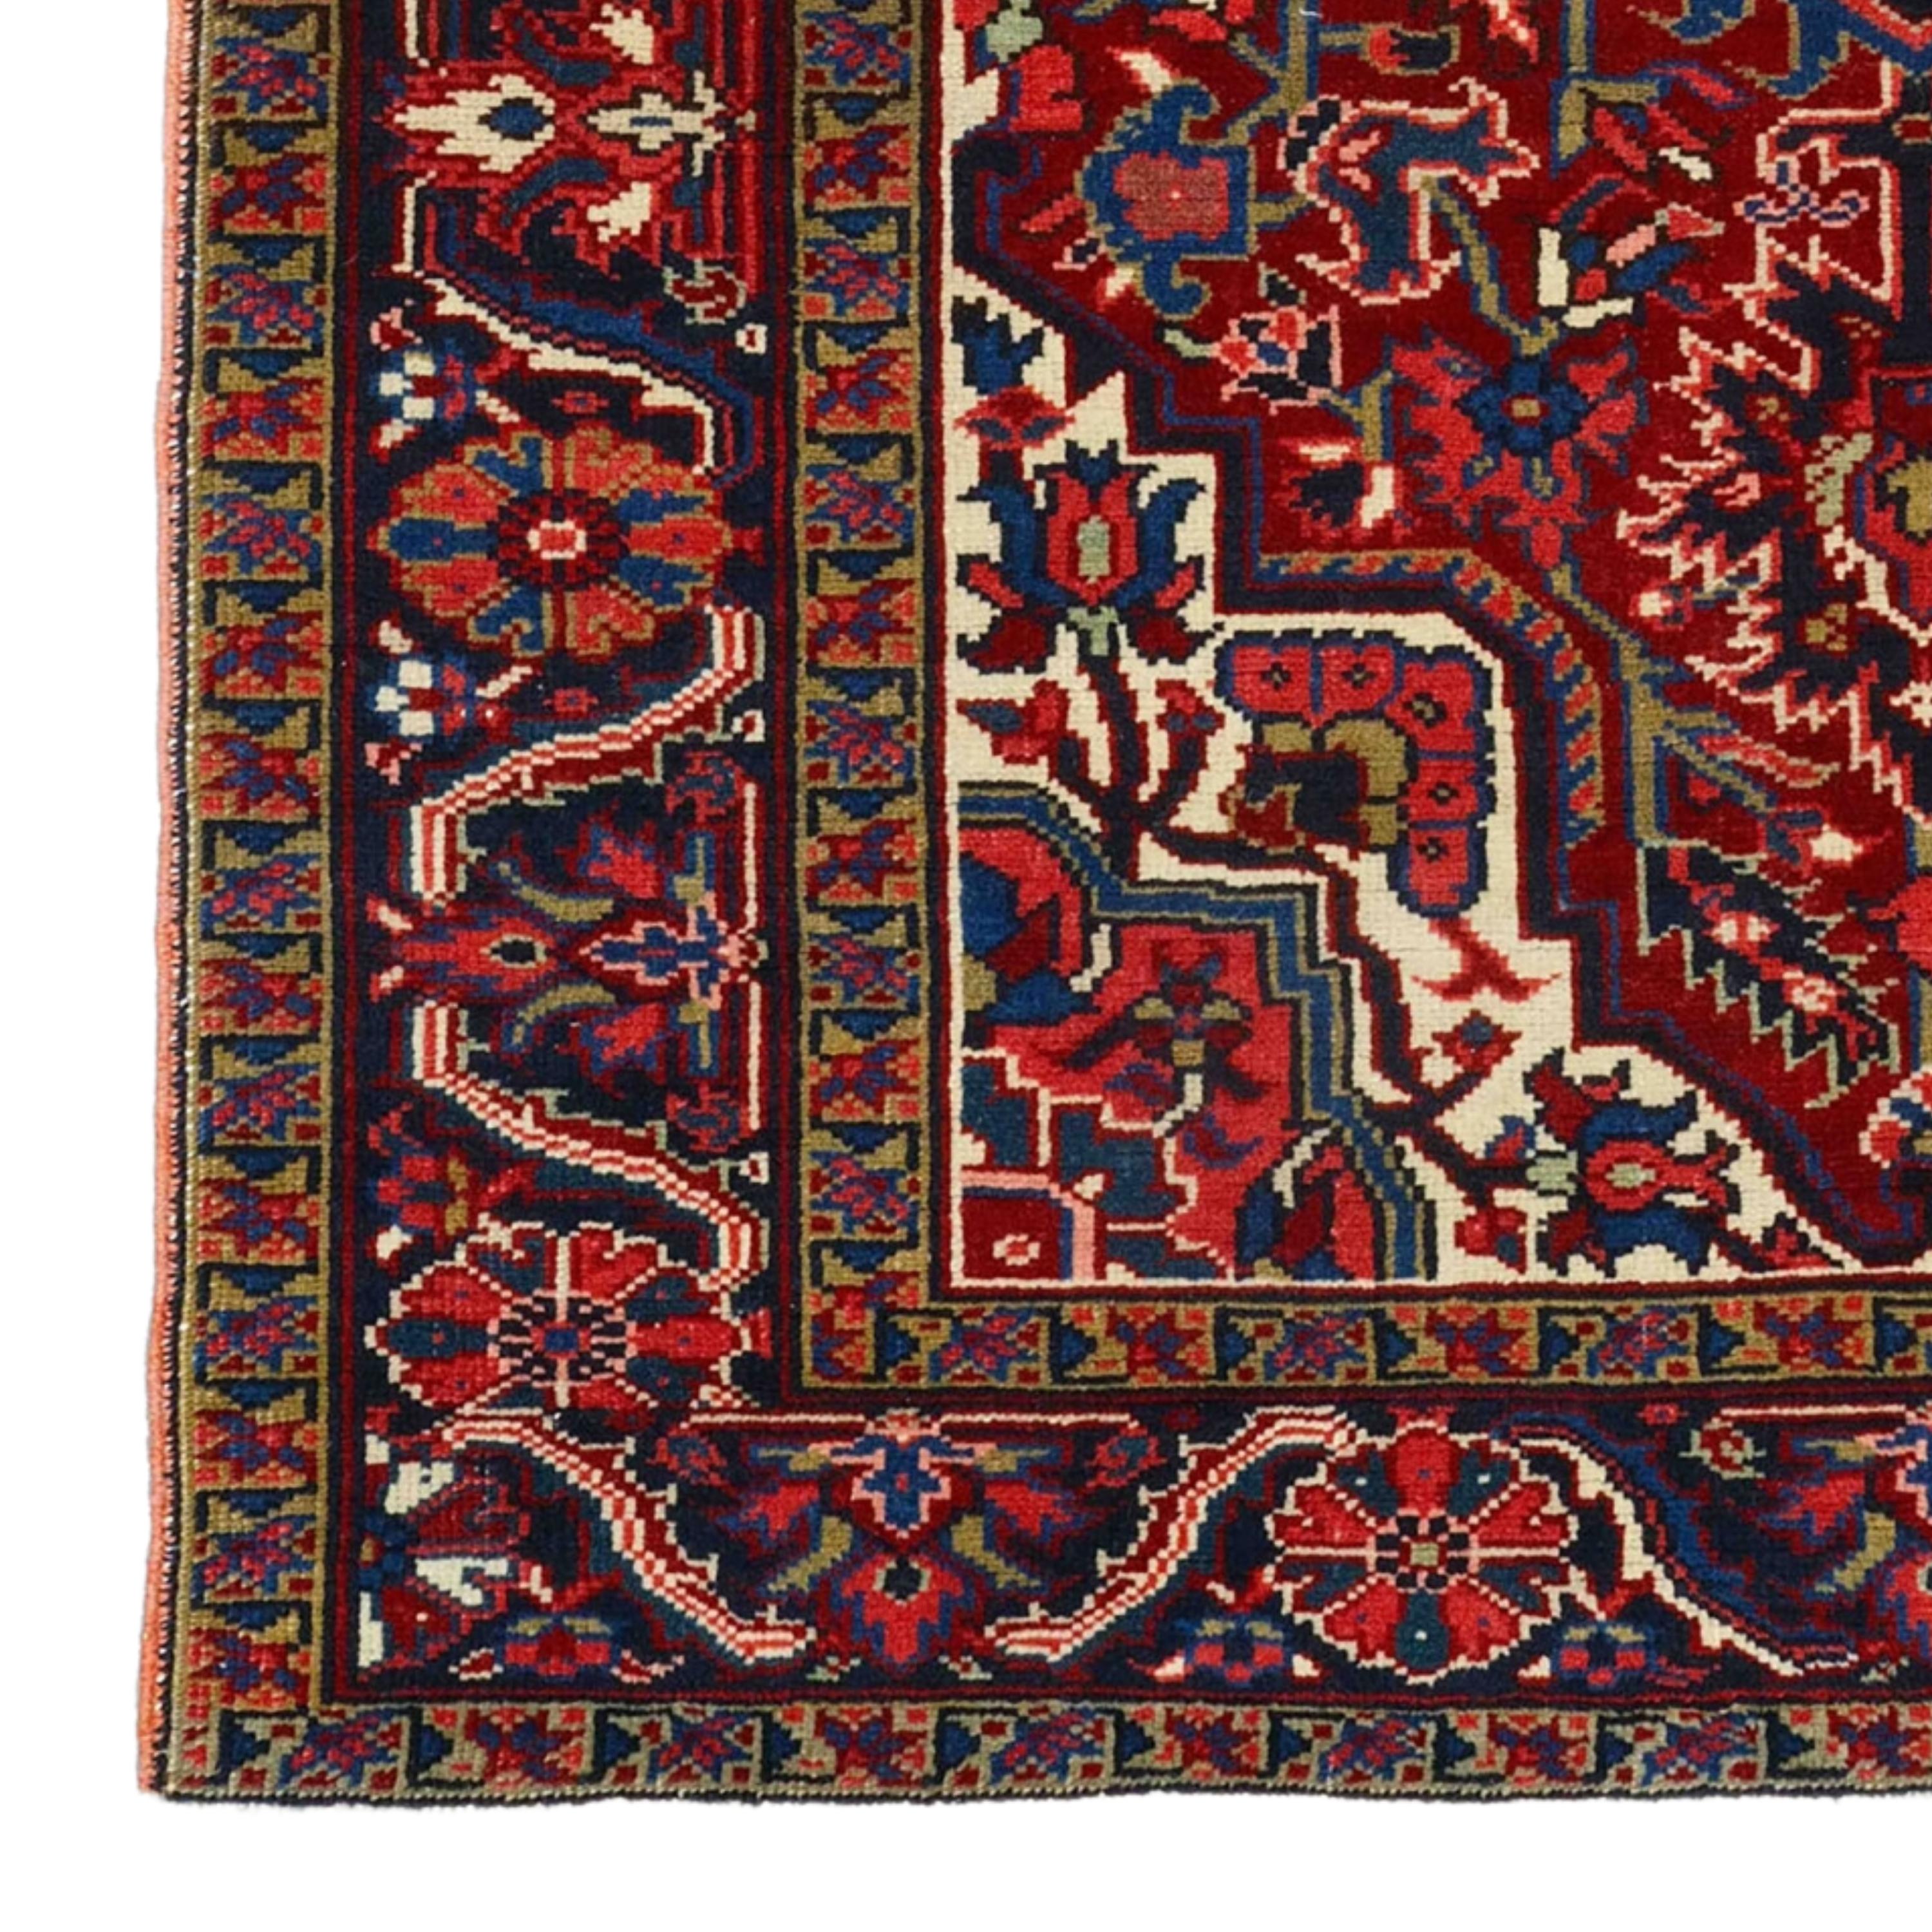 Tapis Heriz de la fin du 19e siècle

Ce tapis extraordinaire vous fascinera par ses motifs complexes et ses couleurs éclatantes qui reflètent la richesse de l'histoire et de l'artisanat de l'époque. Chaque point raconte l'histoire d'artisans